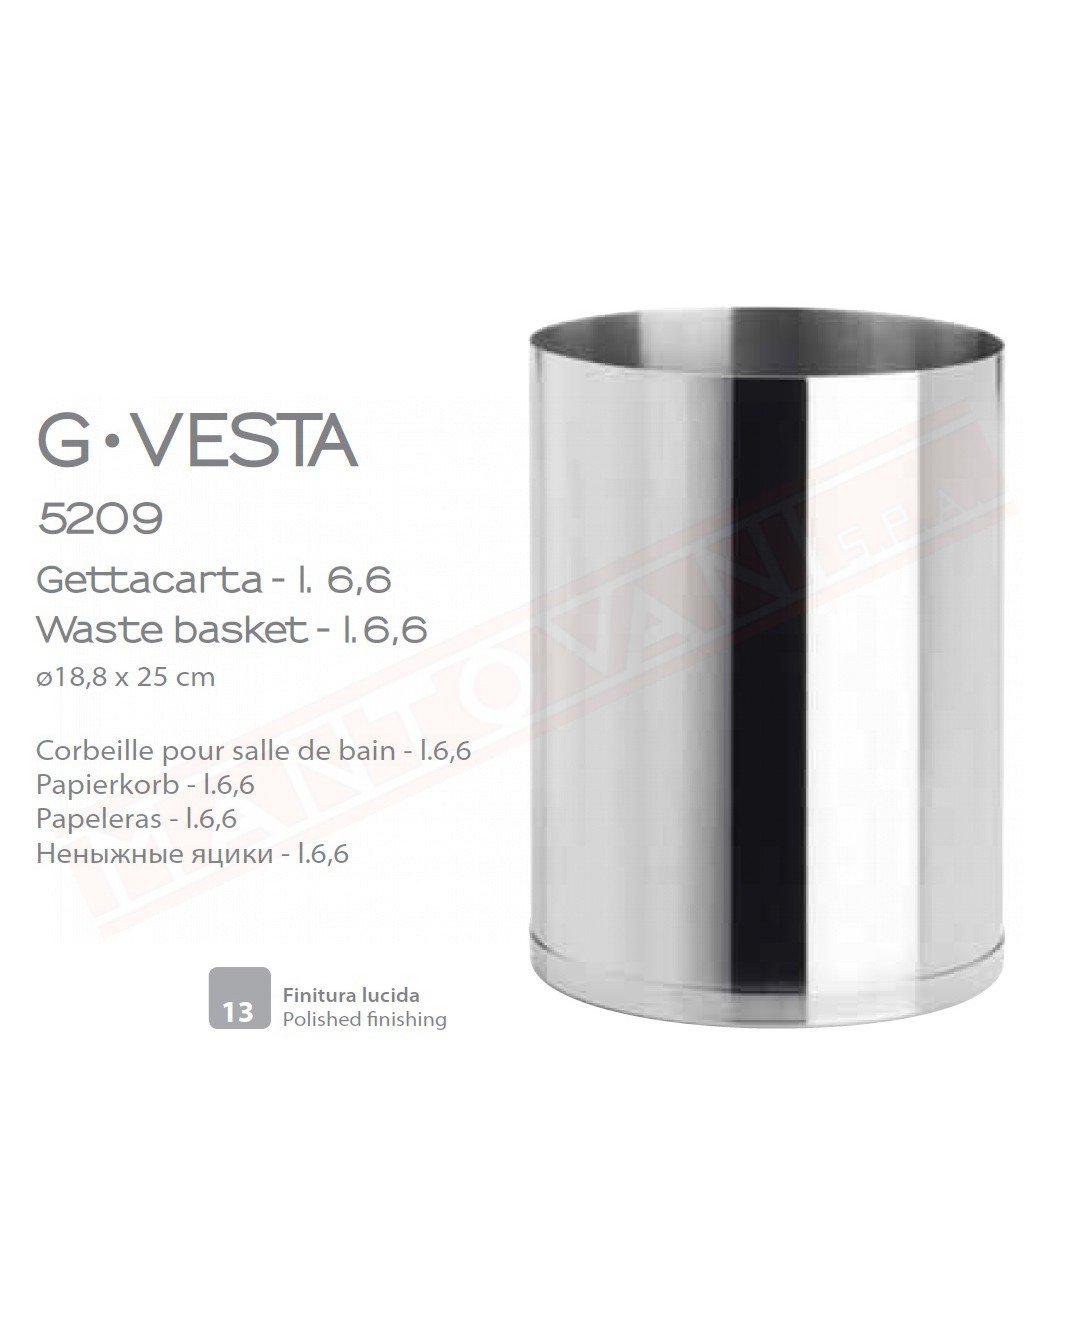 Gedy G-Vesta gettacarta da 6,5 lt in acciaio inox misure art diametro 18,8x25